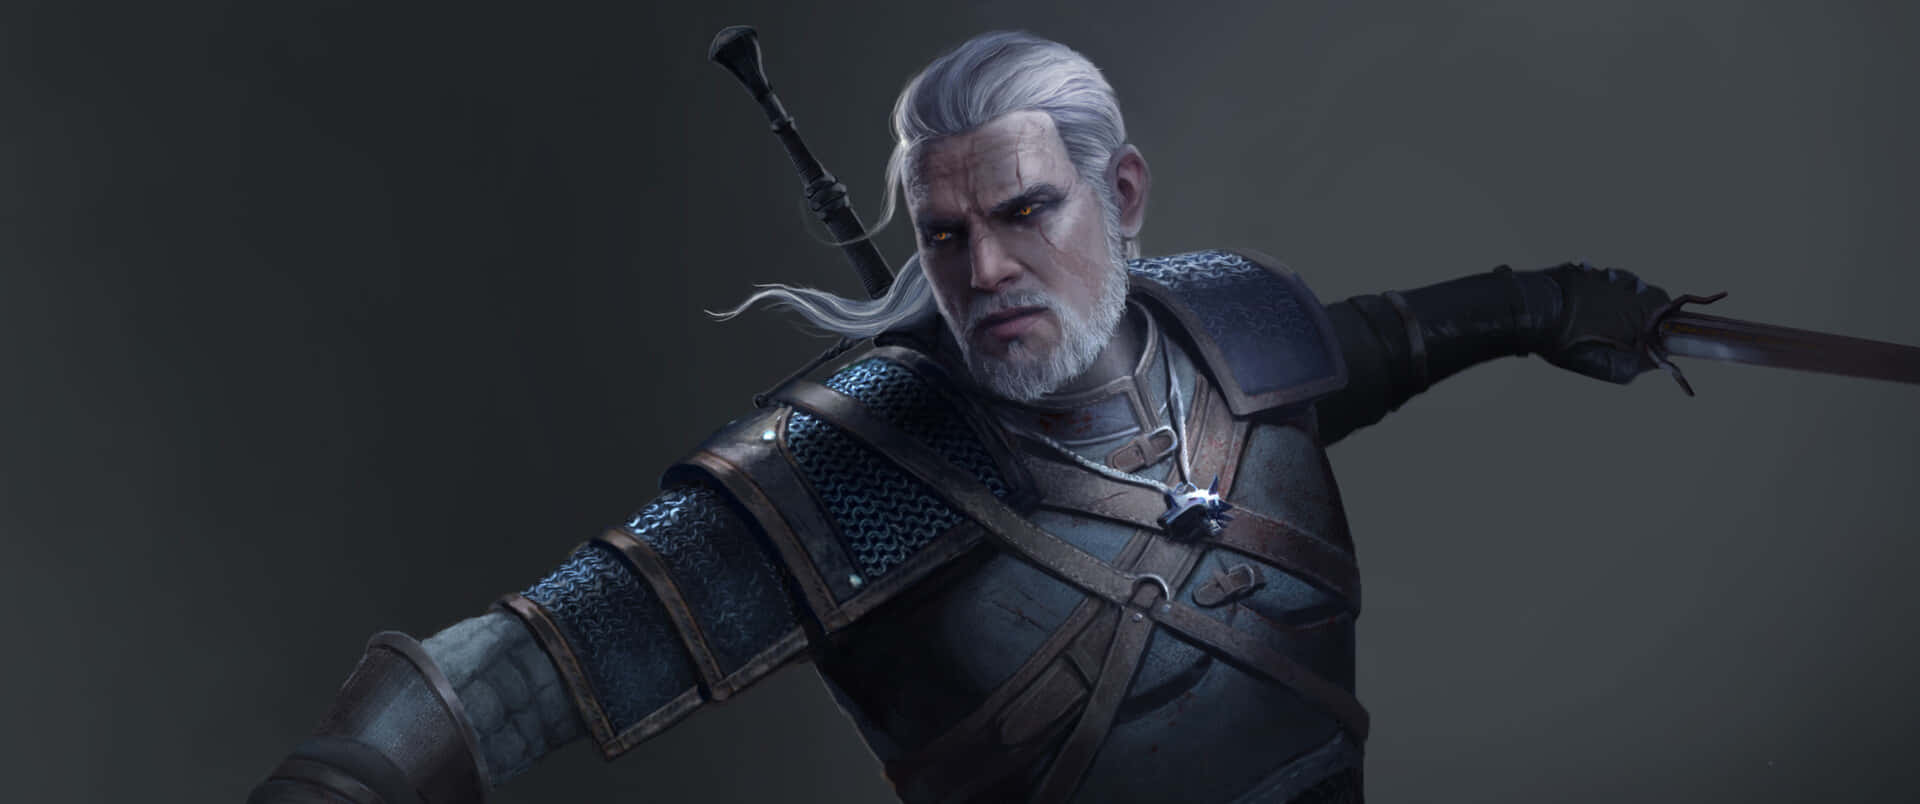 Geralt af Rivia, den drabelige hovedperson fra den populære computerspilserie The Witcher, i al hans herlighed. Wallpaper